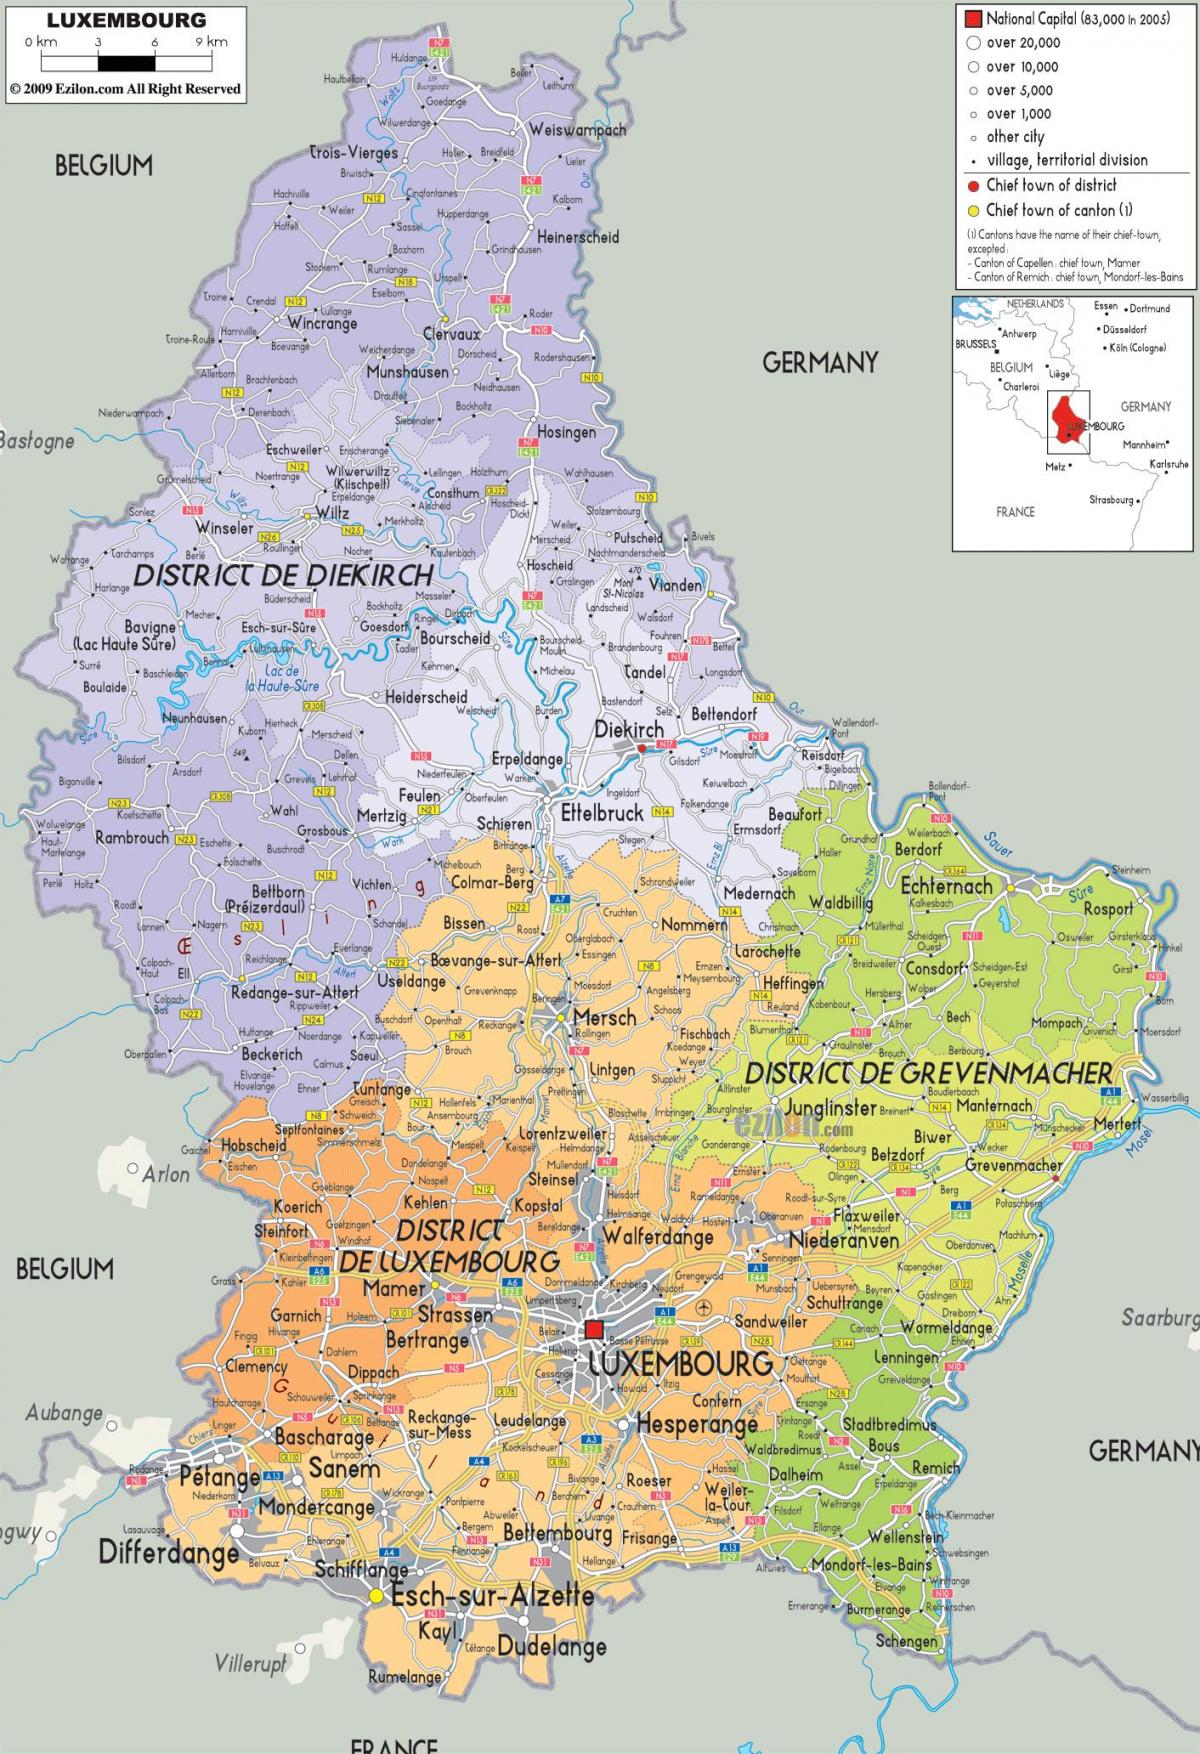 Campagna lussemburgo la mappa